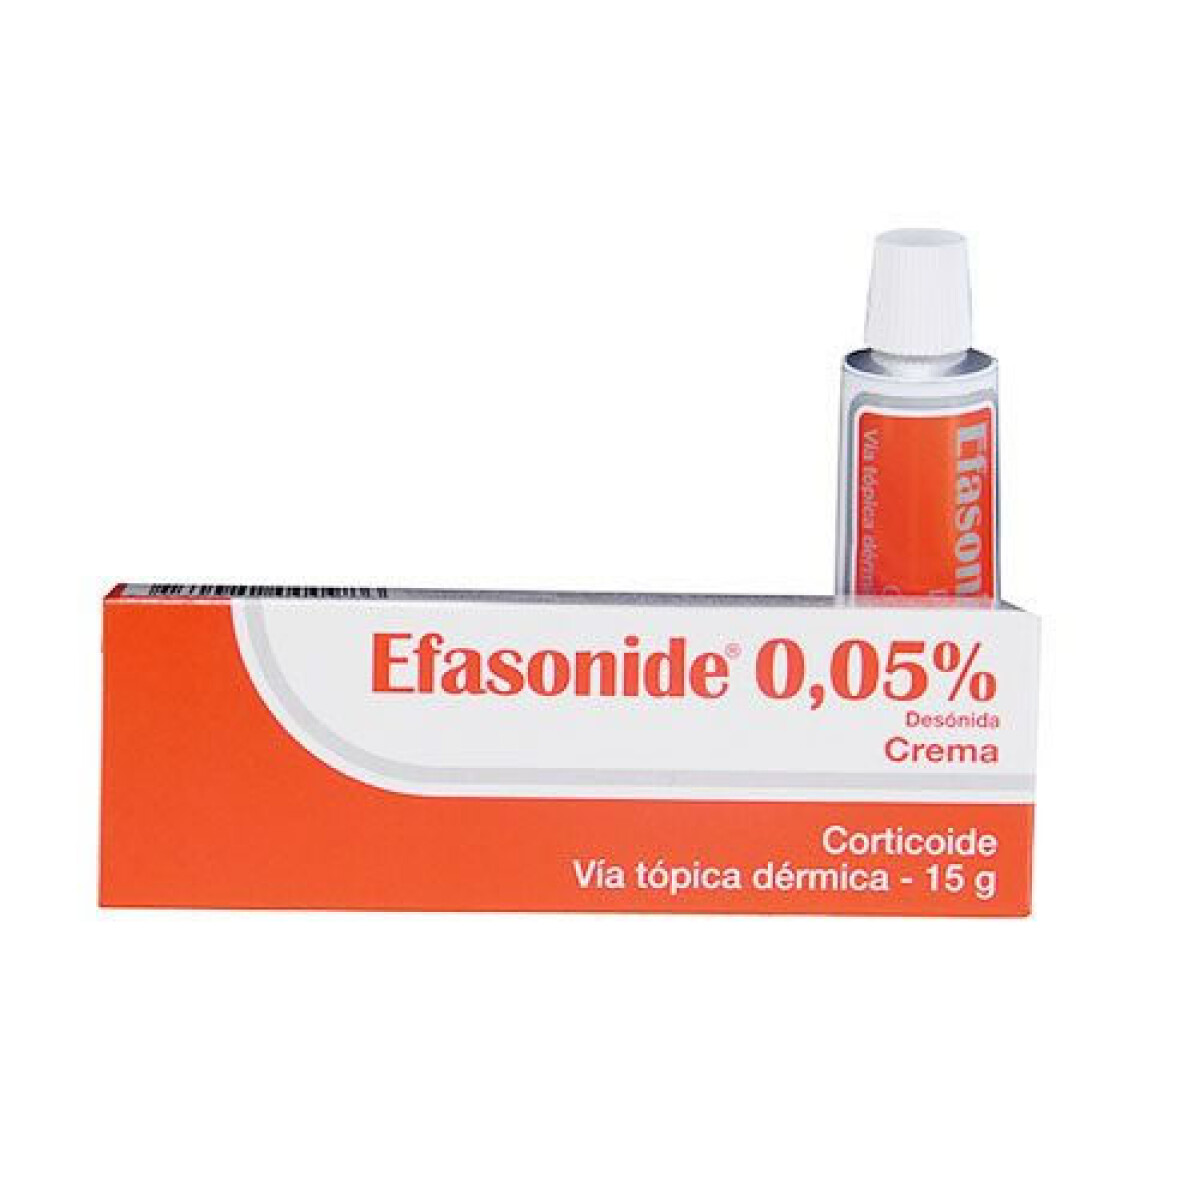 EFASONIDE CREMA 0.05% 15 GR 